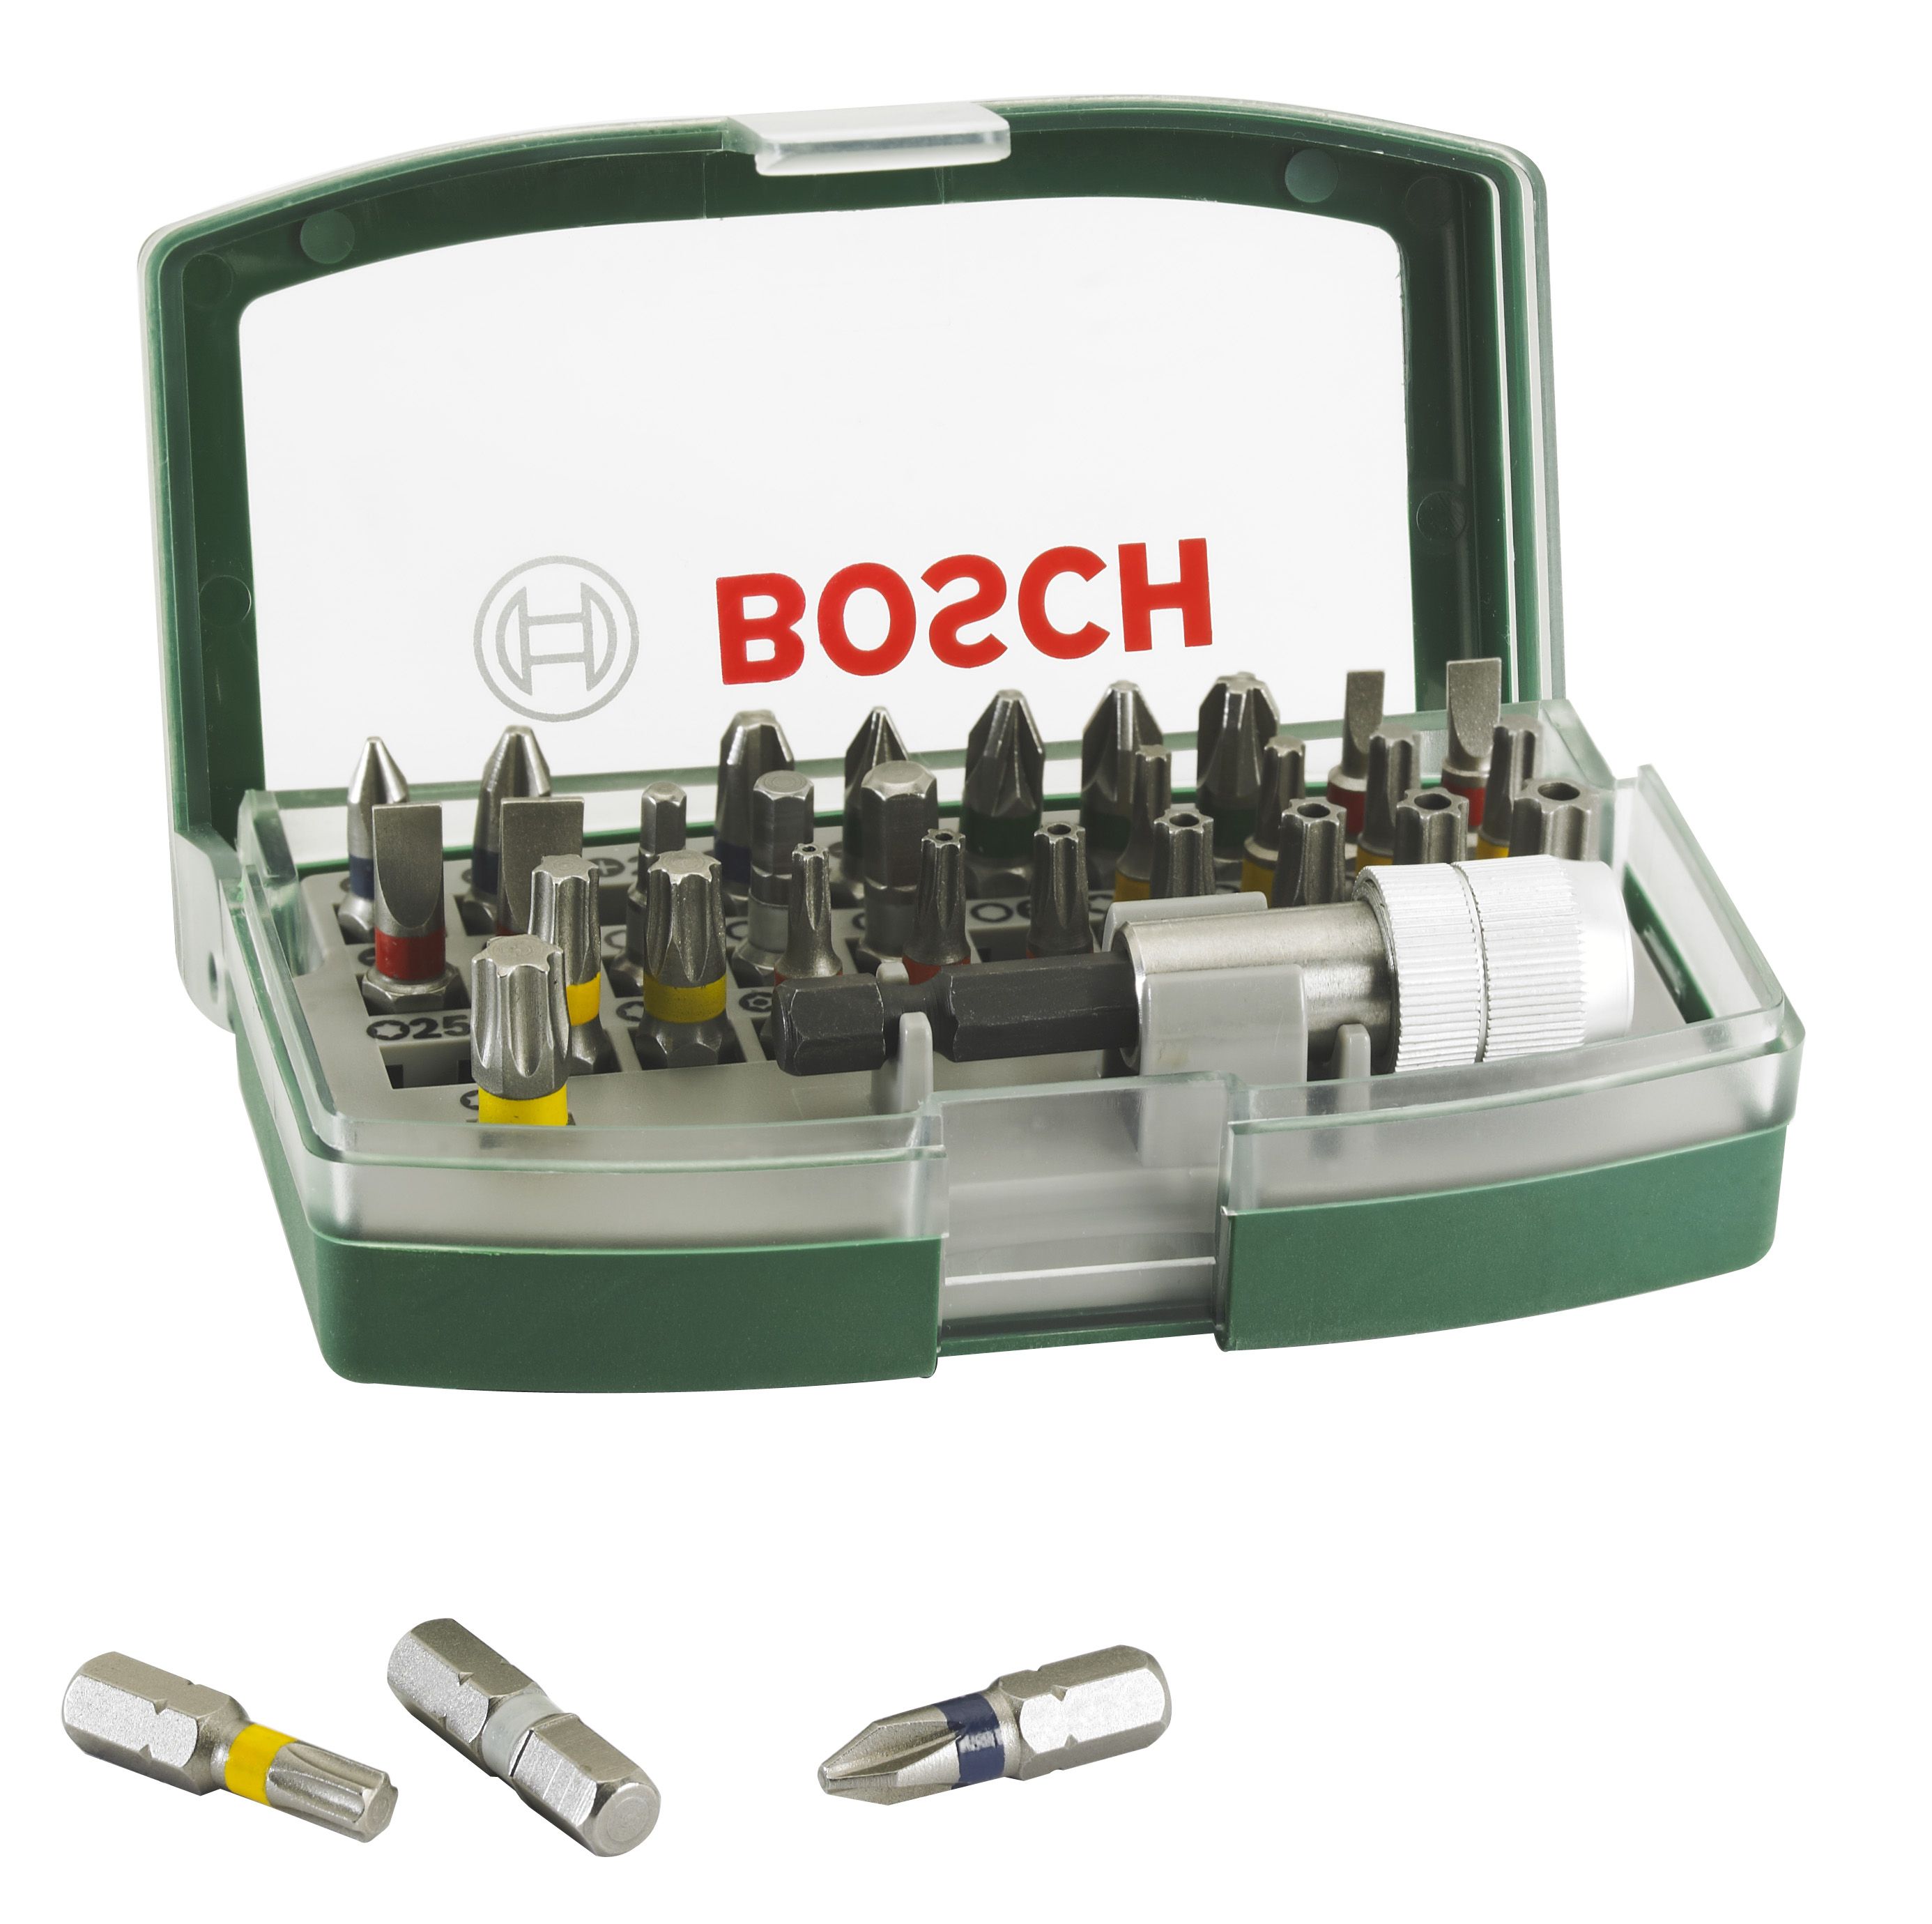 Image of Bosch 32 Piece Mixed Screwdriver Bit Set